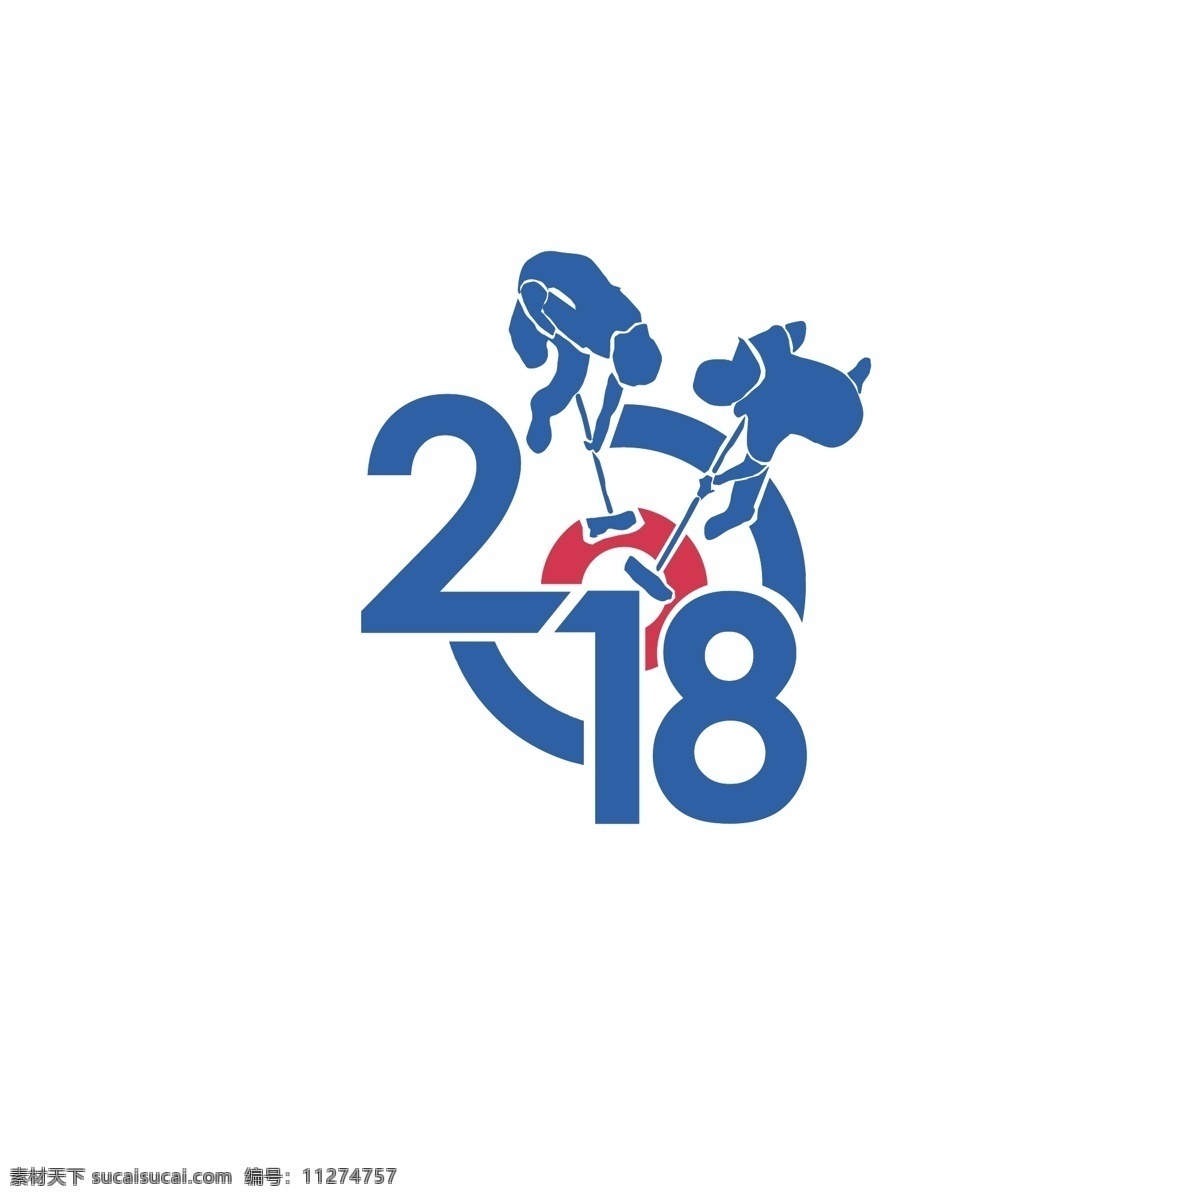 冰壶logo 冰壶运动 logo设计 运动 体育 奥运 冬季 标志图标 公共标识标志